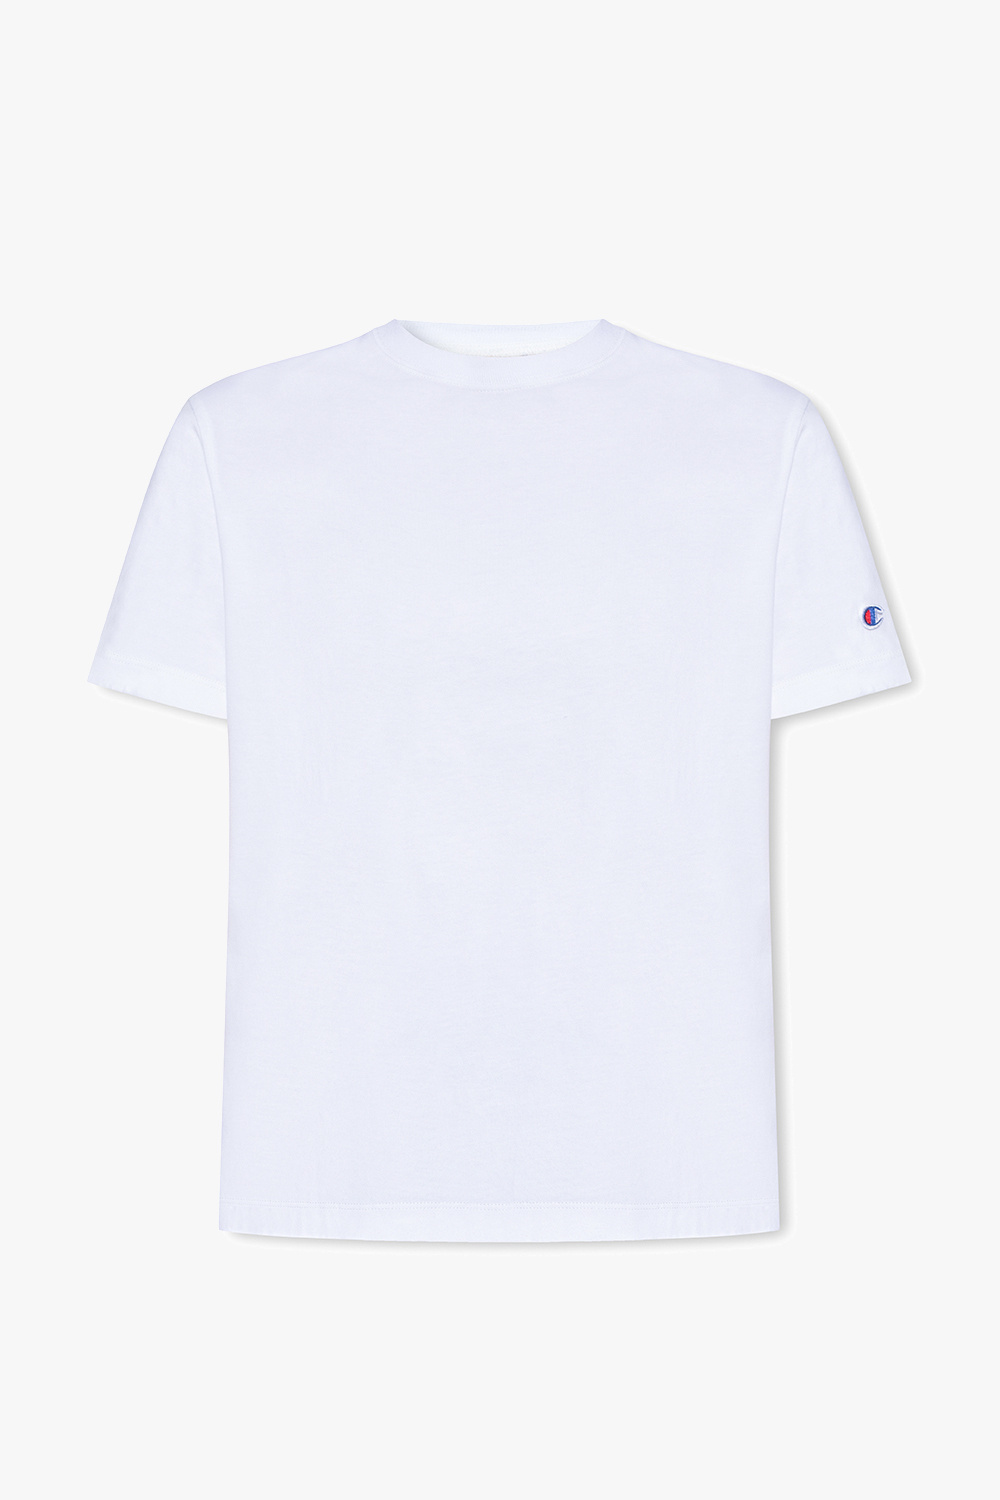 fra hvid i sort T Champion shirt - og forede - IetpShops Norway Pakke logo with t-shirt-BHer - 2 White med Hunkemoller